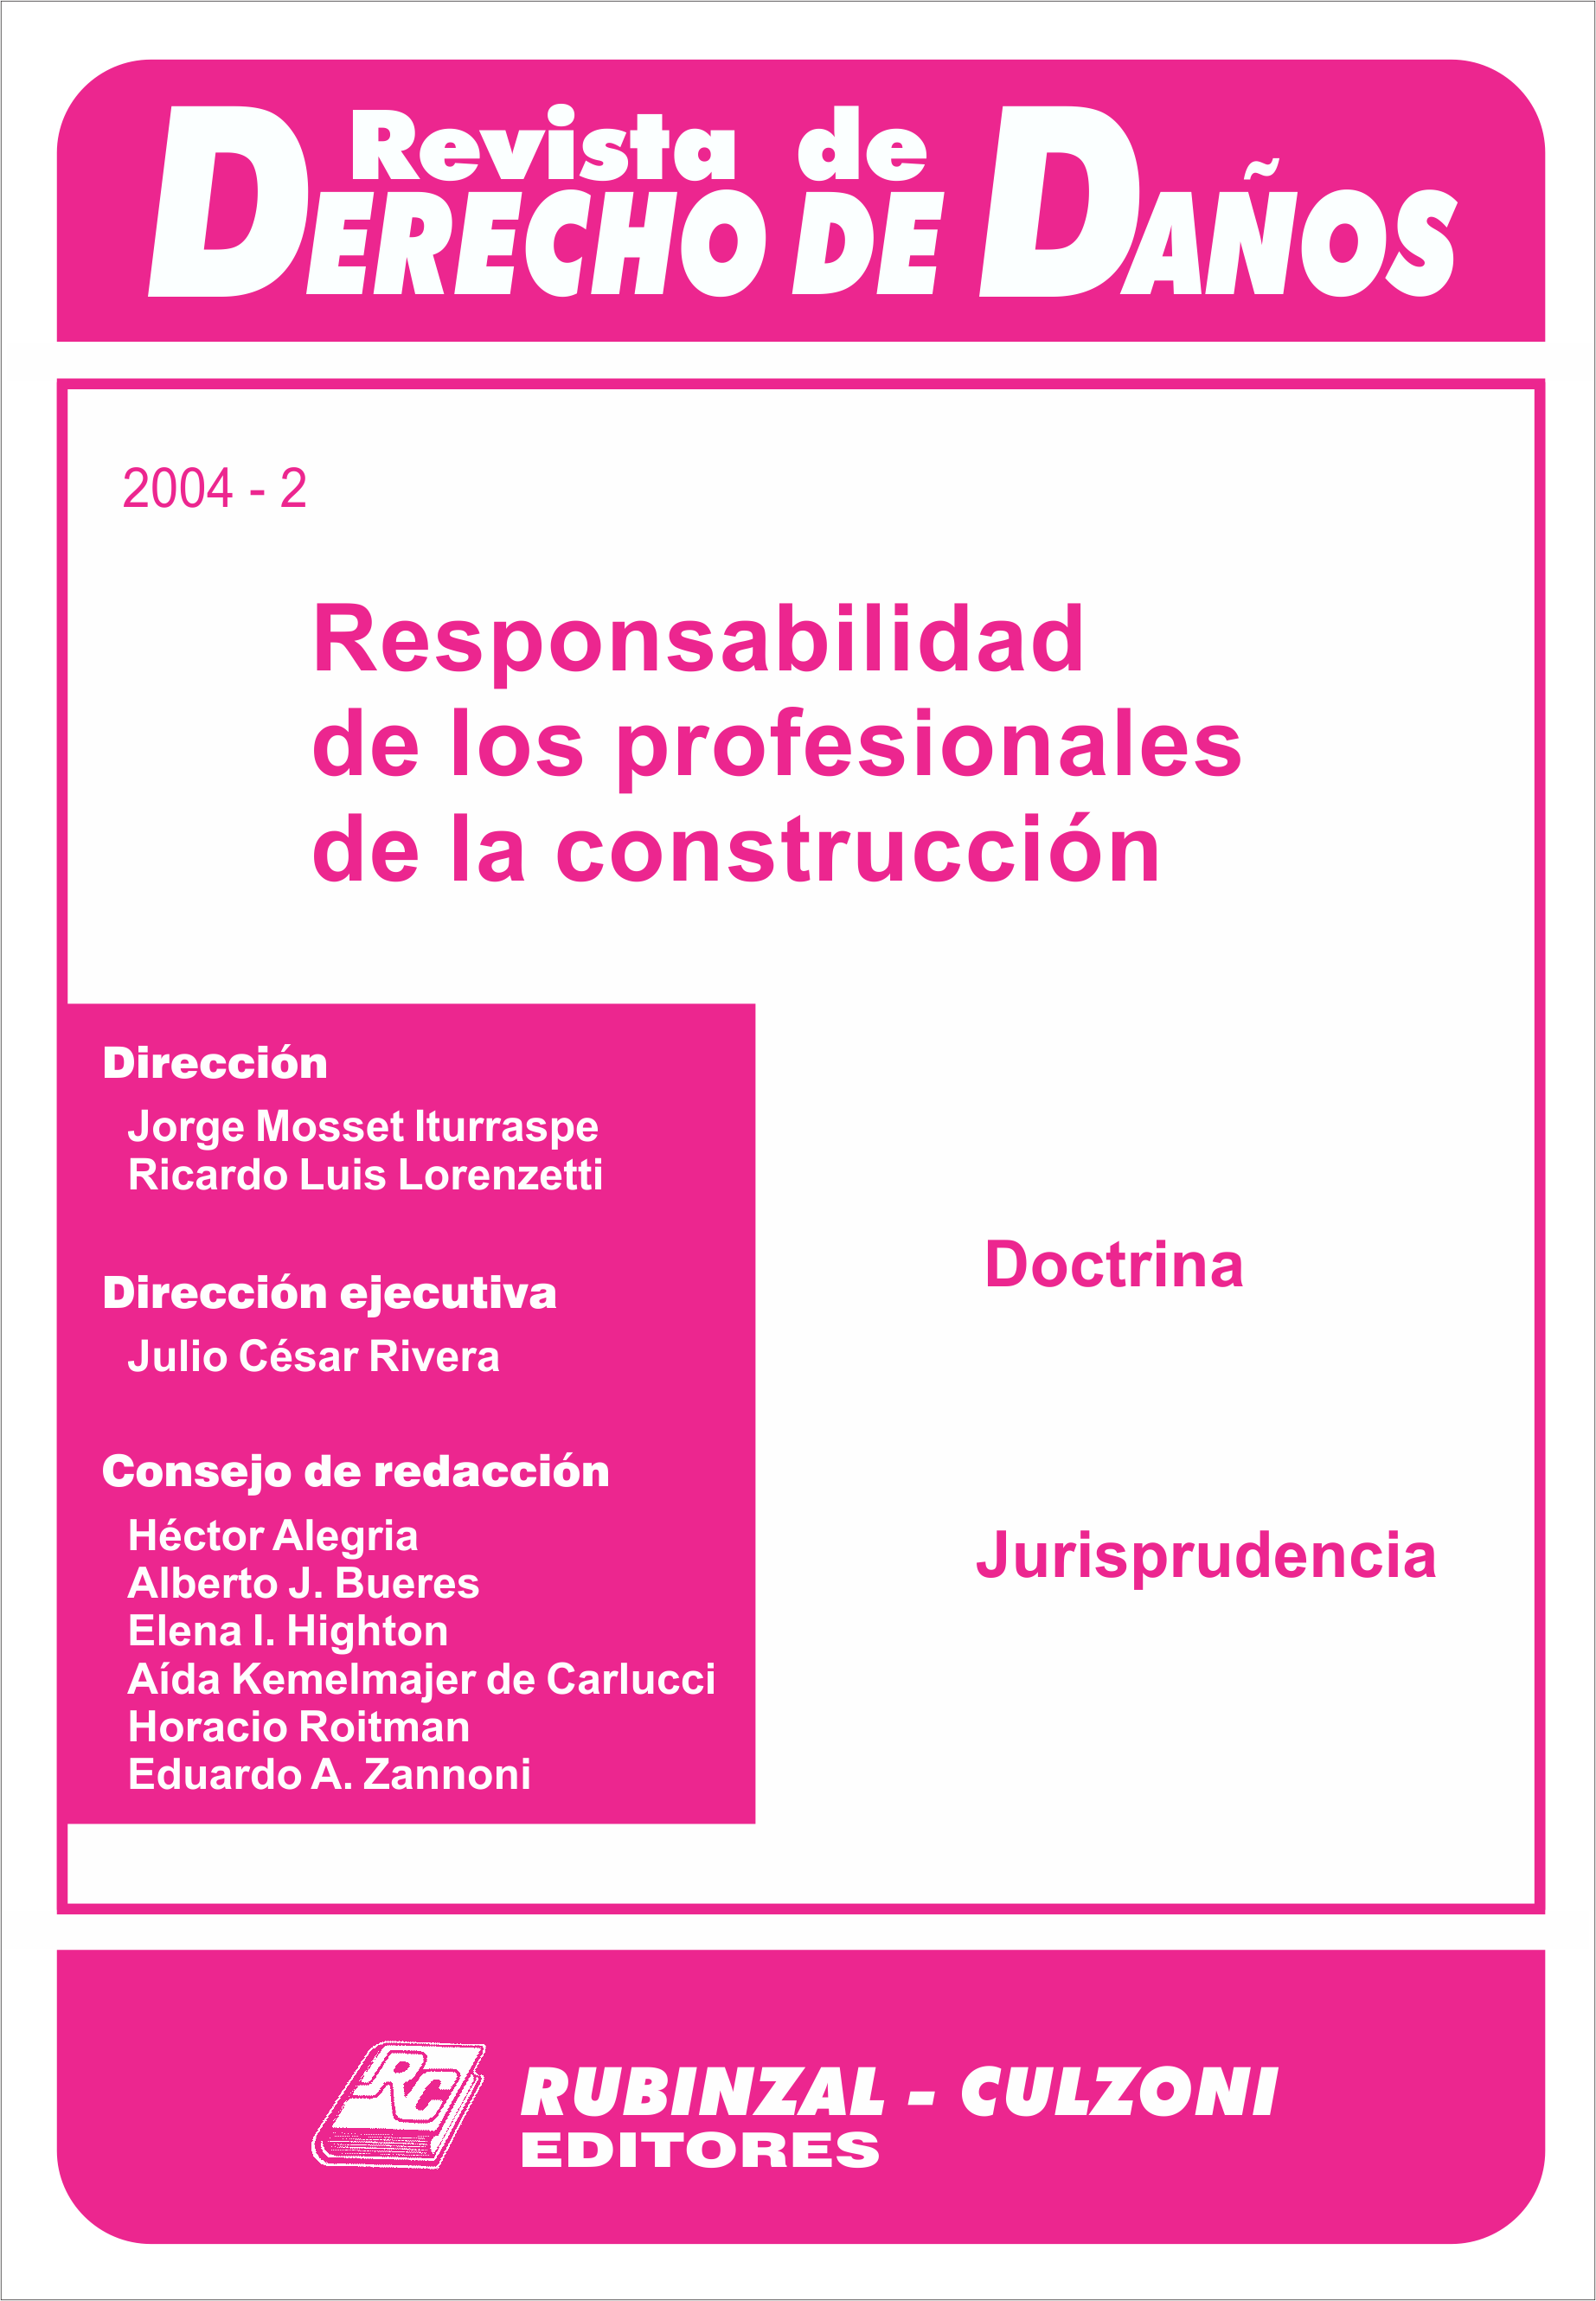 Revista de Derecho de Daños - Responsabilidad de los profesionales de la construcción